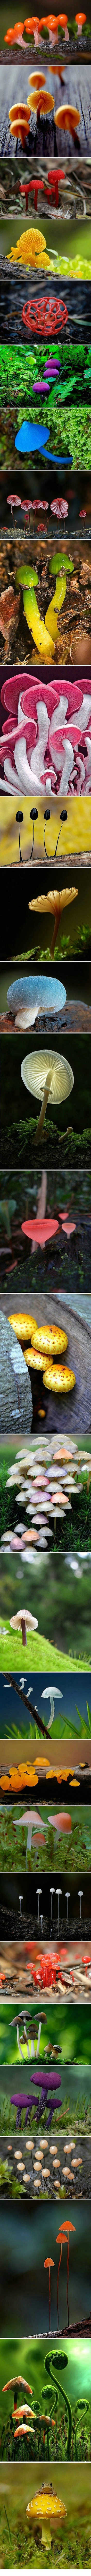 你确定你认识“蘑菇”吗？